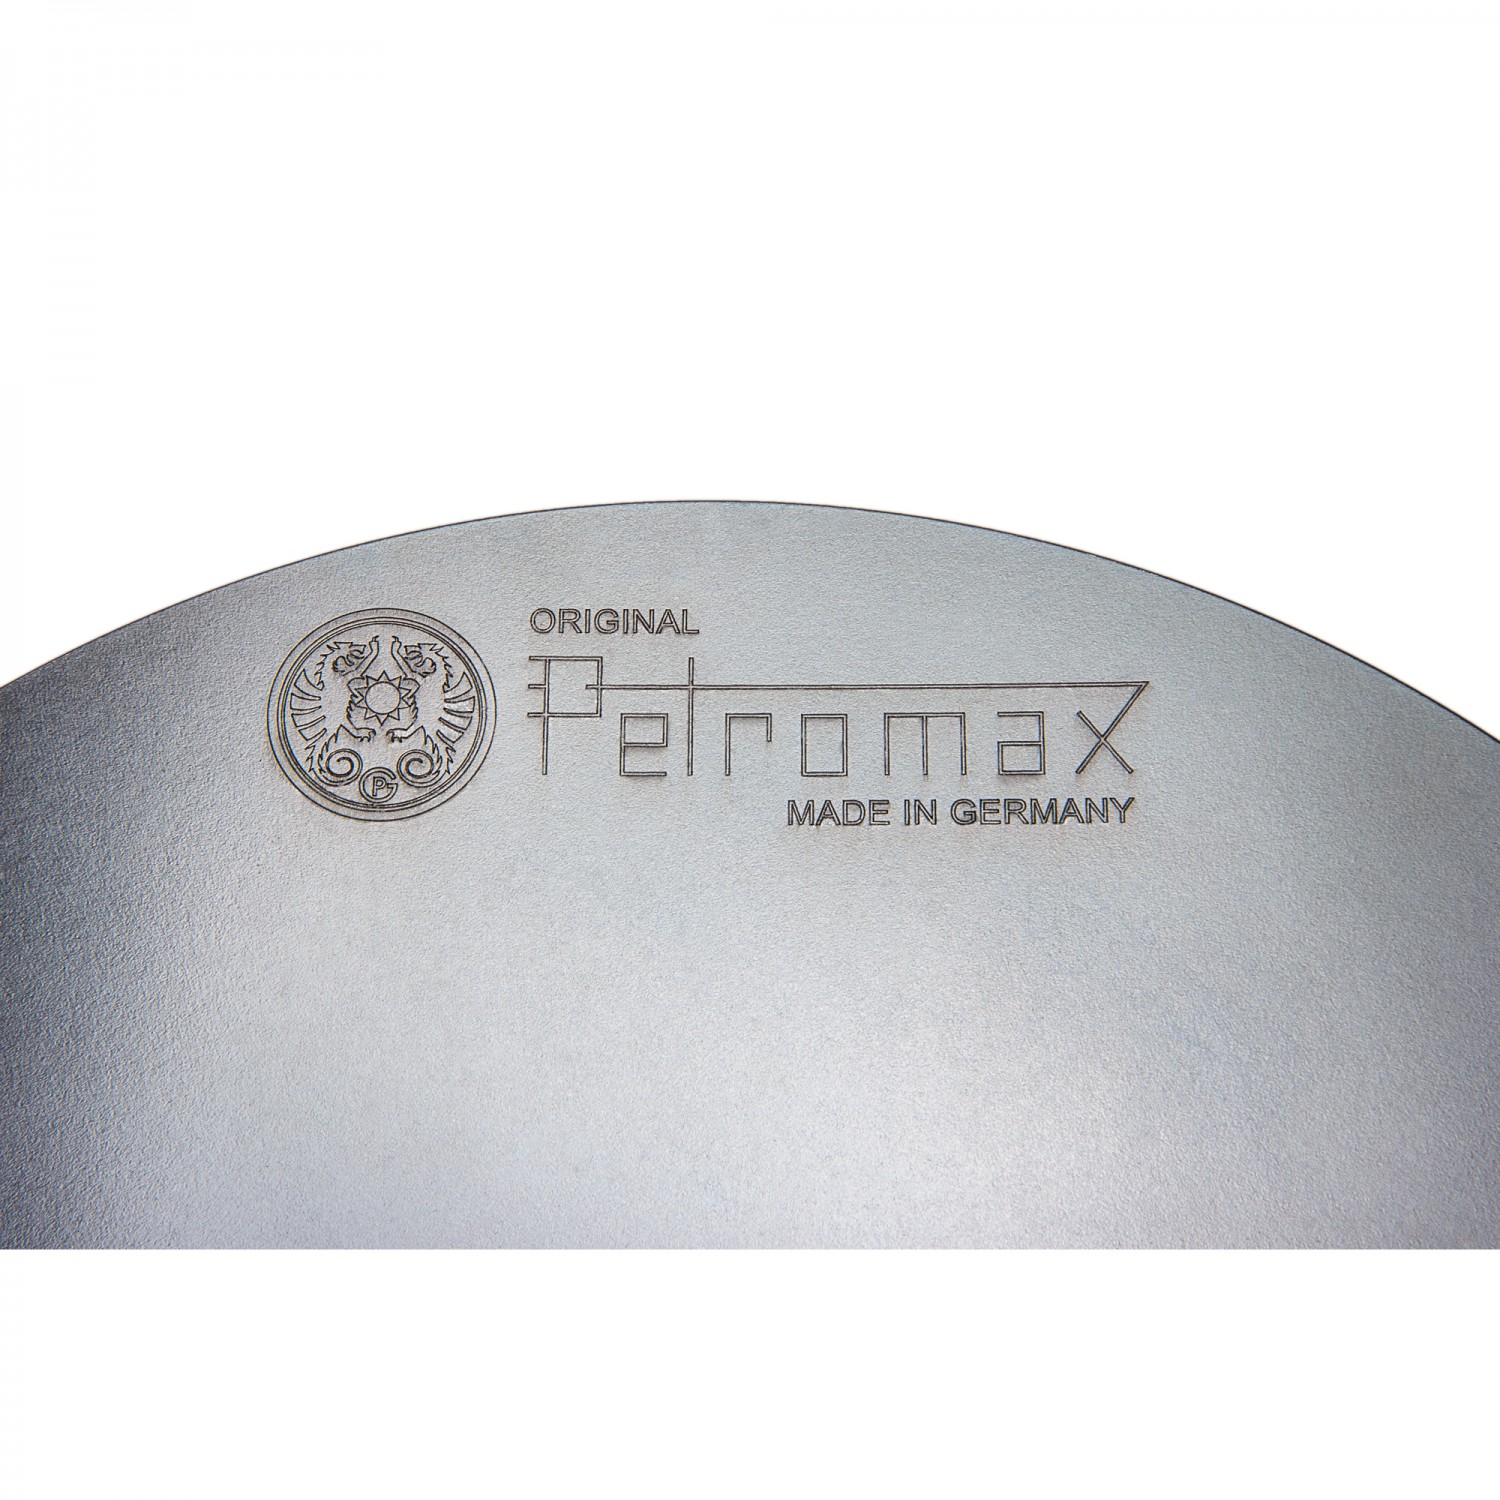 Petromax 56 cm Grillschale und Feuerschale fs56 für unterschiedliche Garzeiten